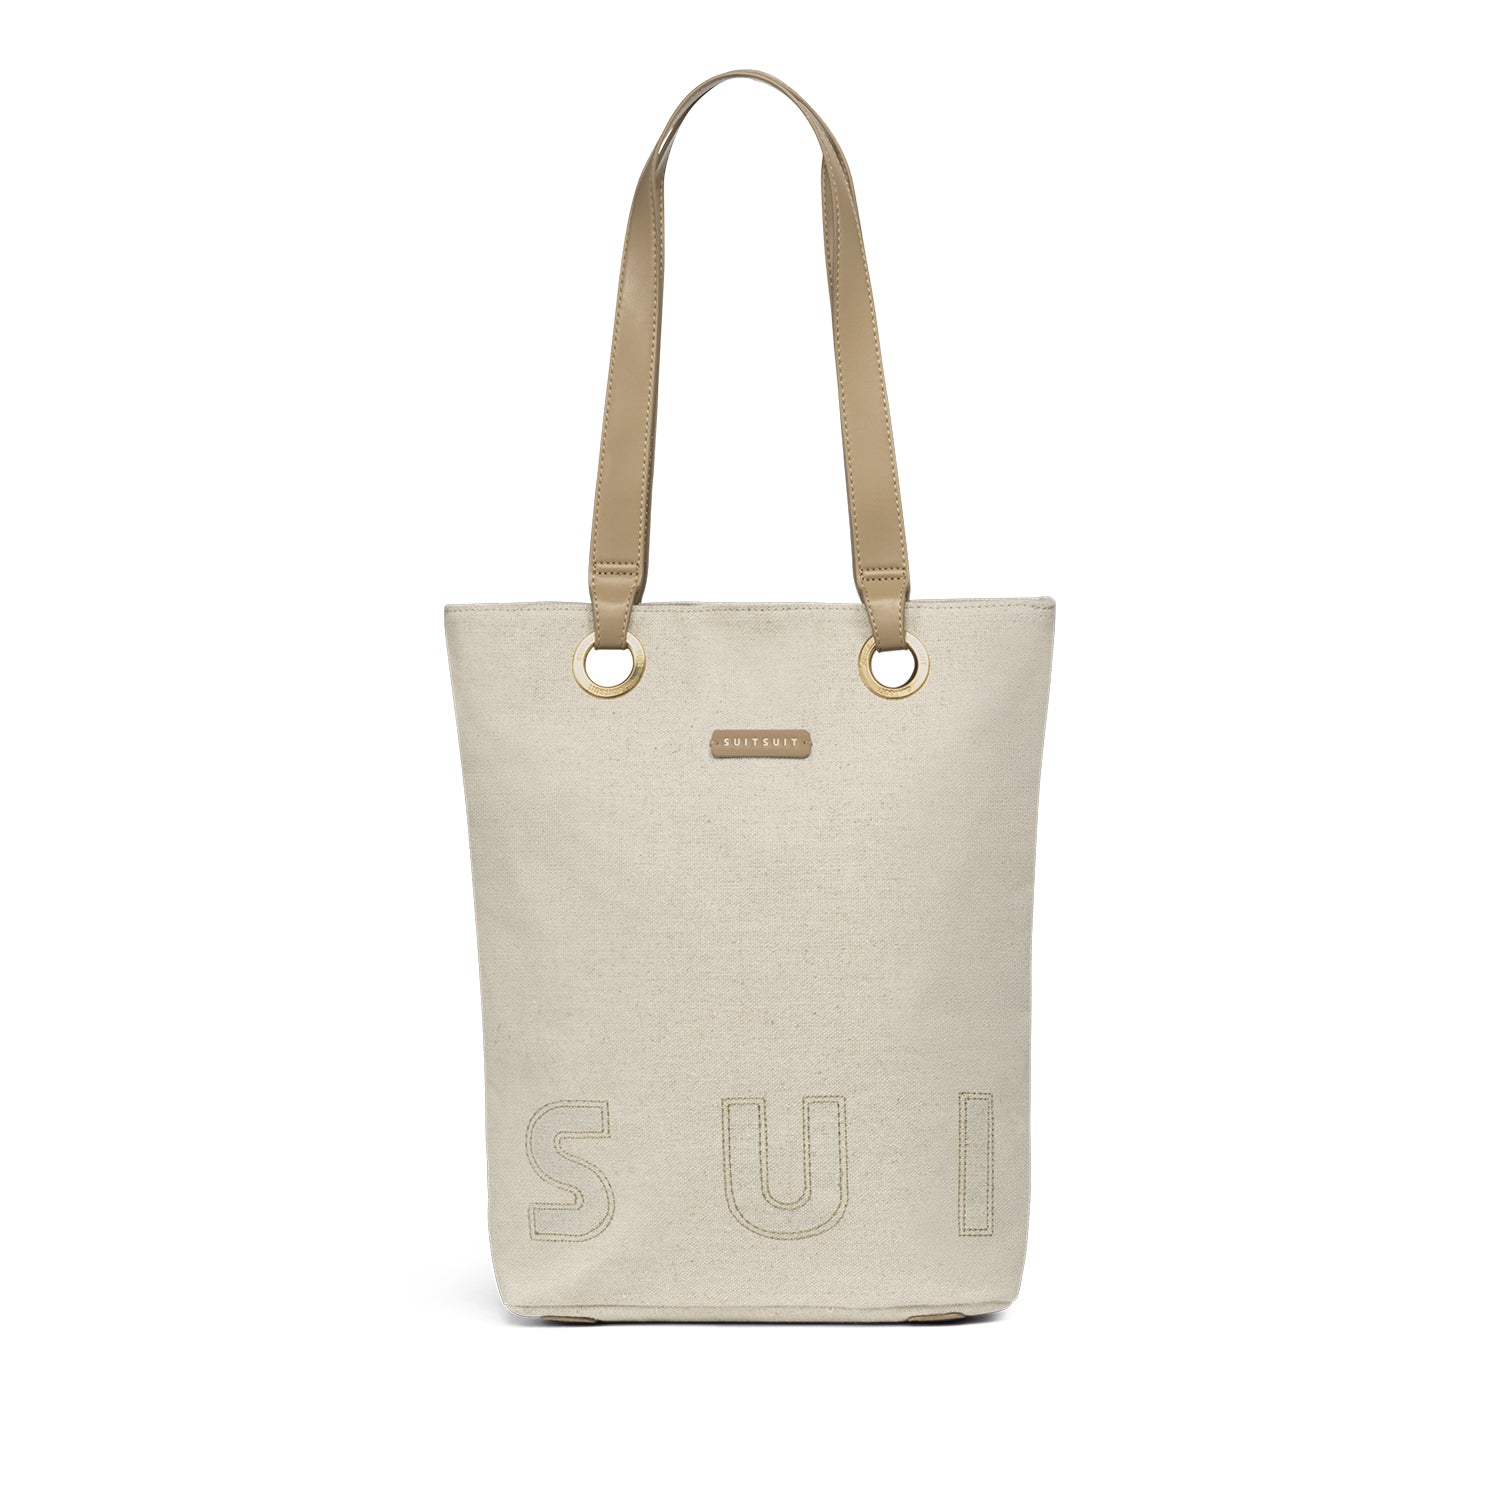 SUITSUIT - Fusion - Natural Linen - Upright Bag